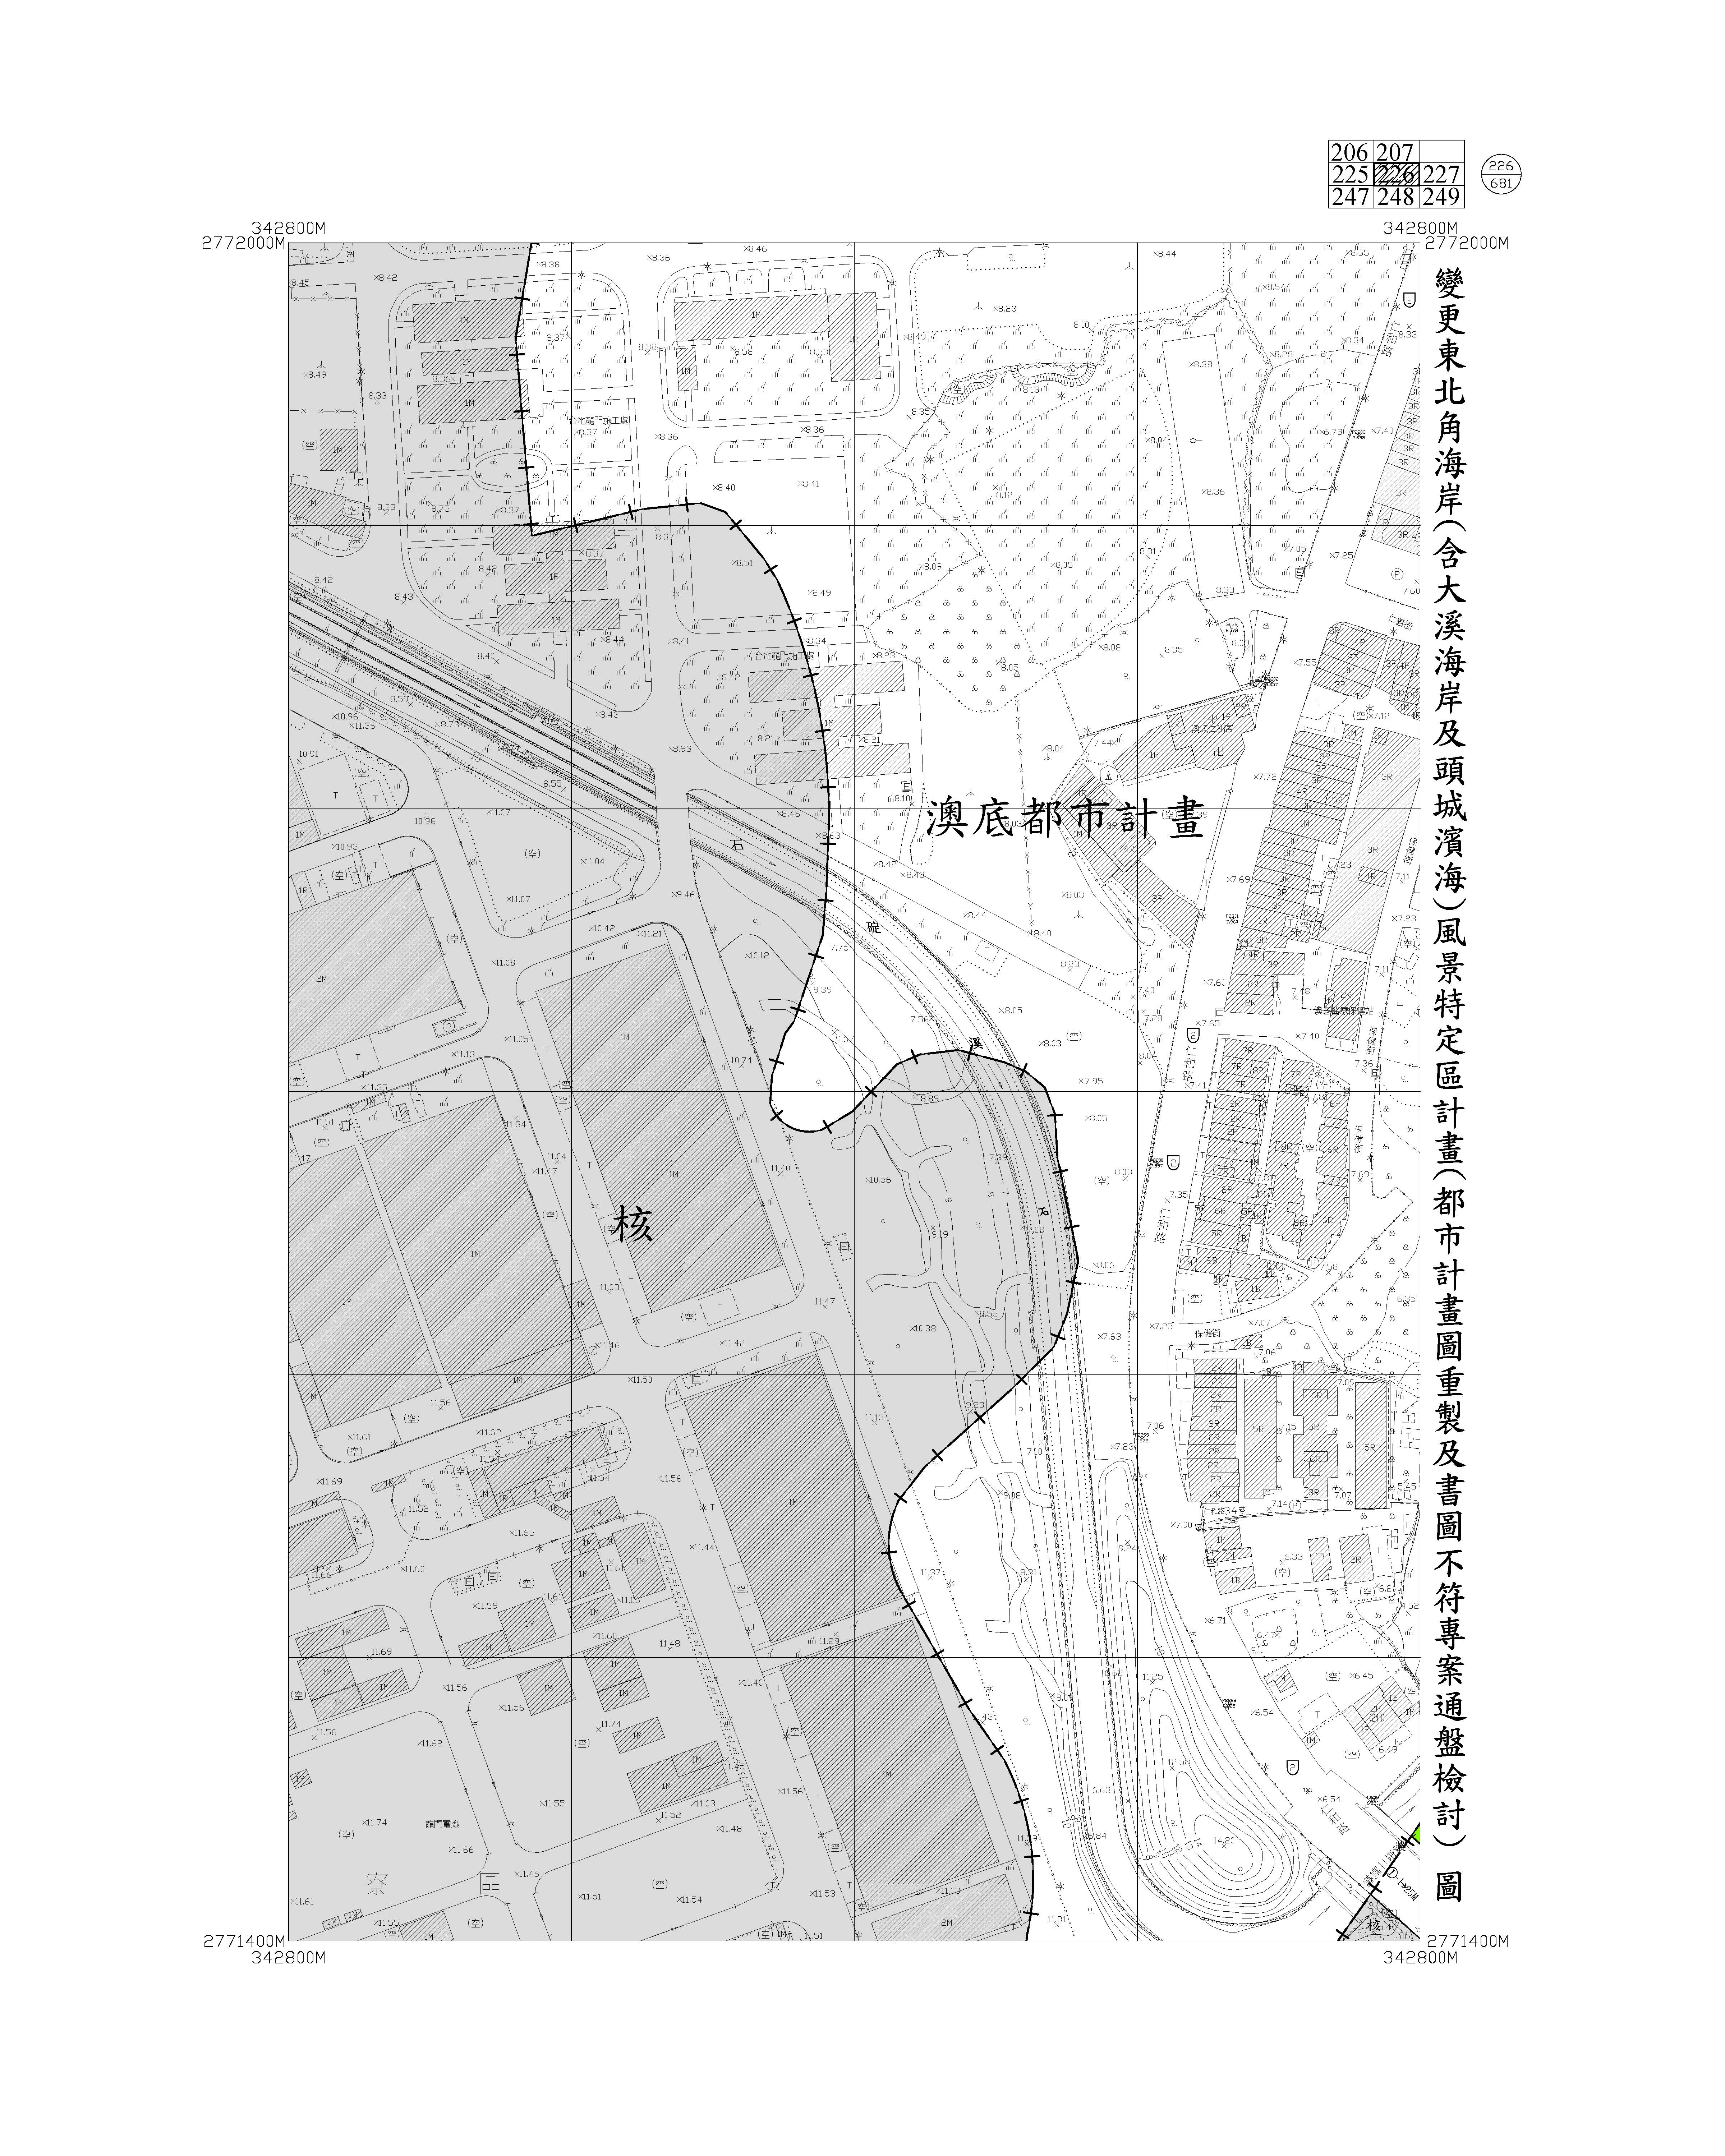 含大溪海岸及頭城濱海都市計畫圖重製及書圖不符專案通盤檢討圖資235